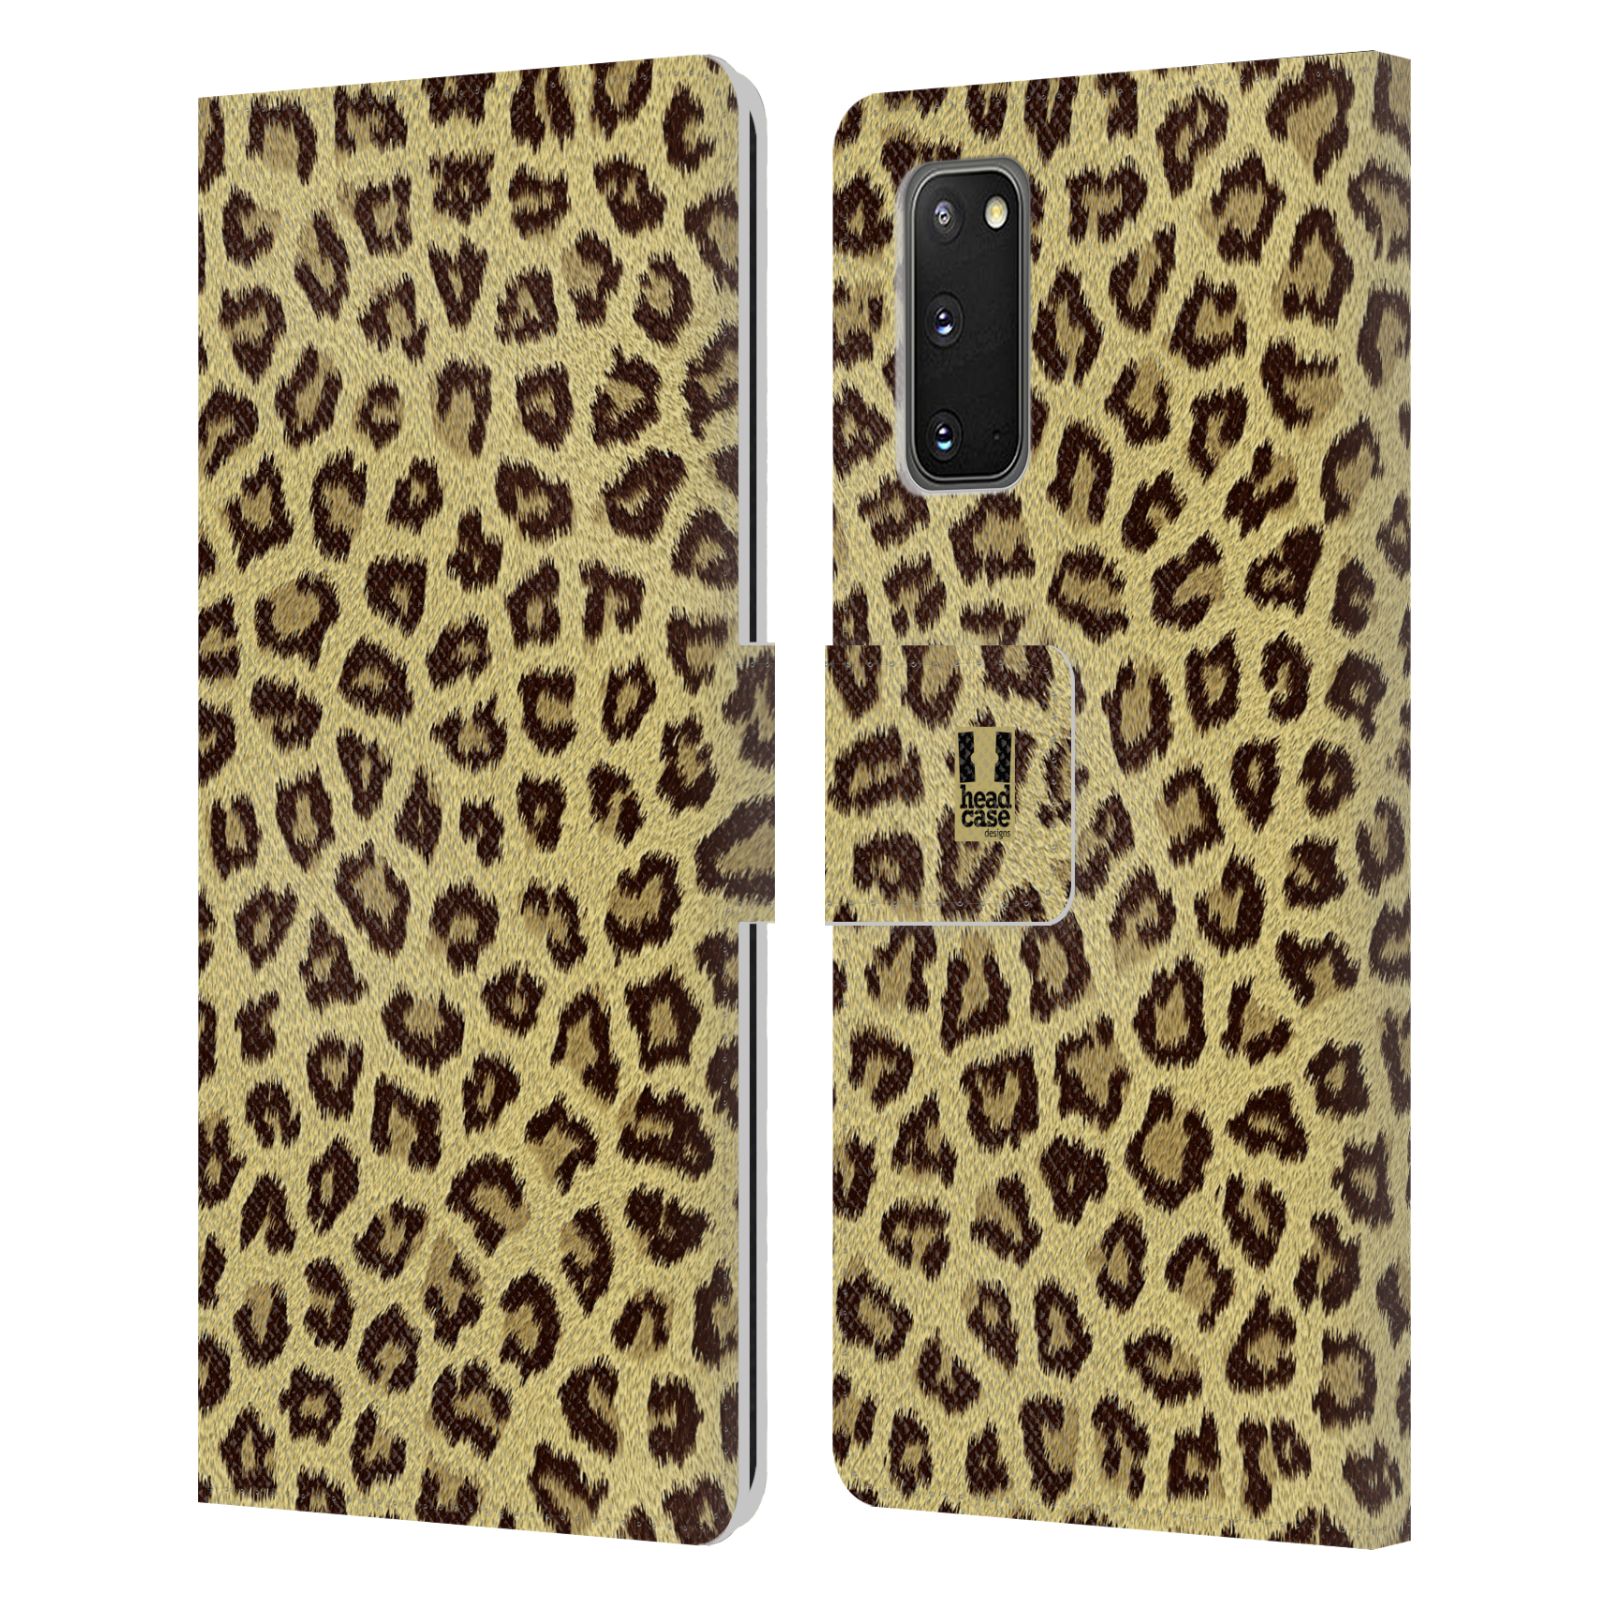 Pouzdro na mobil Samsung Galaxy S20 zvíře srst divoká kolekce jaguár, gepard